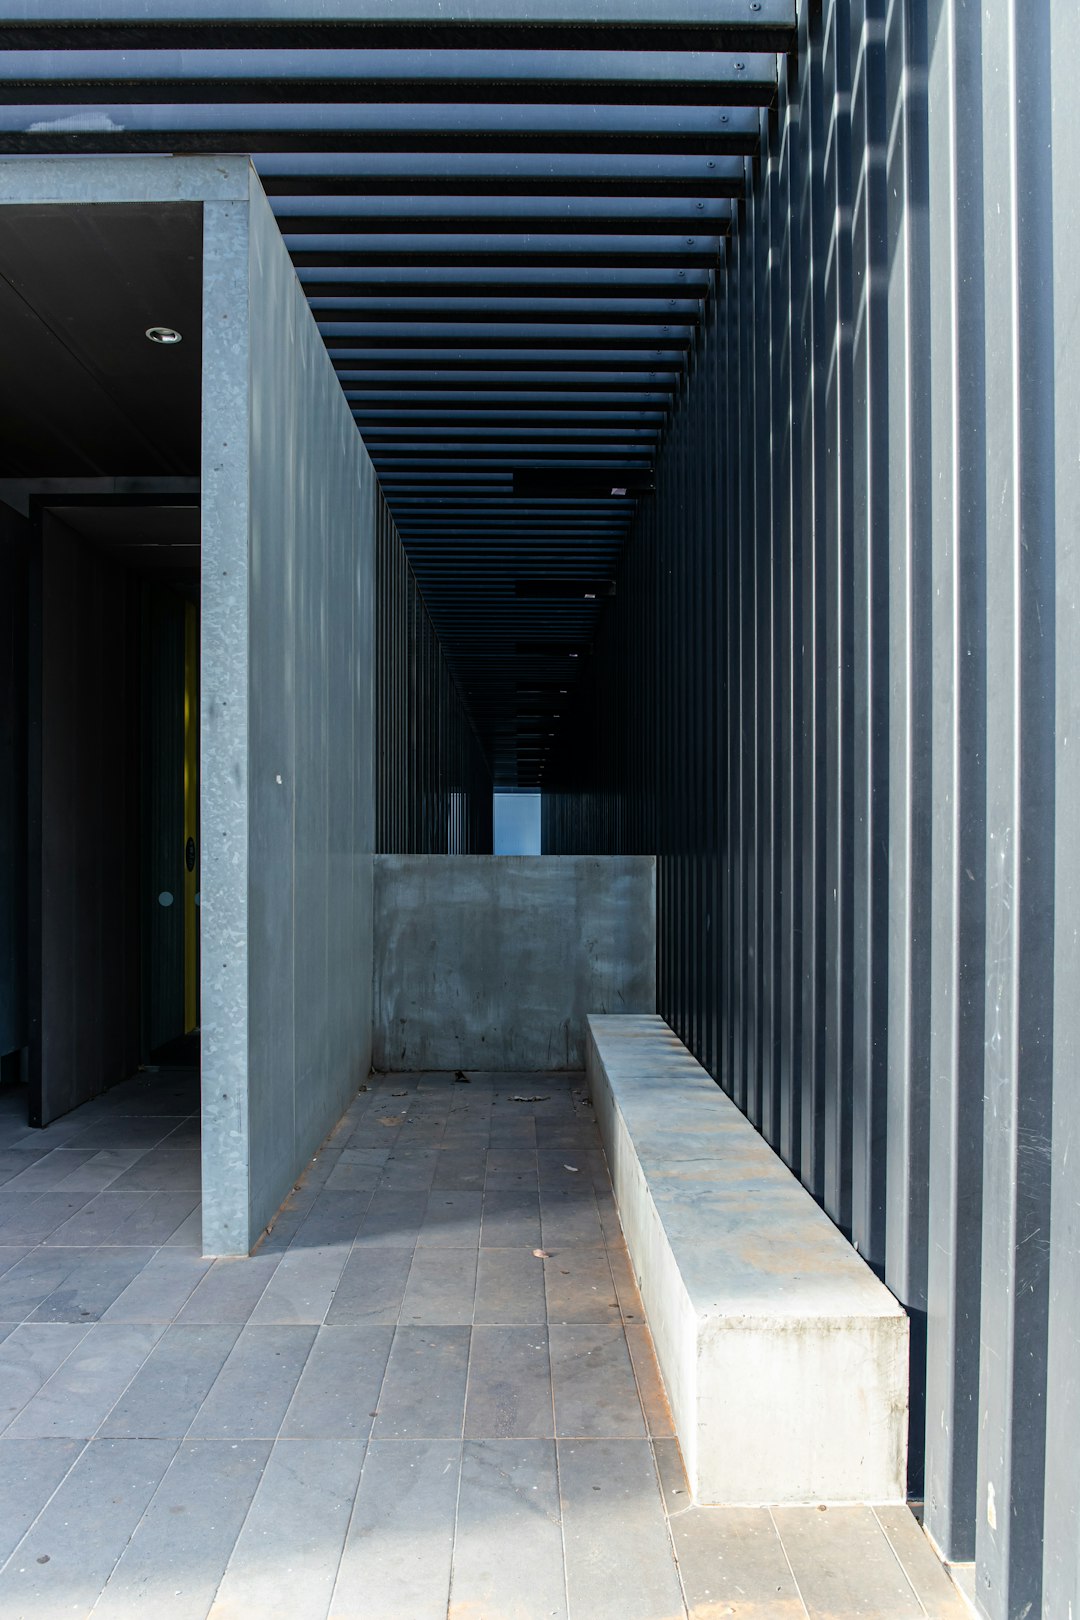 gray concrete hallway with black metal doors